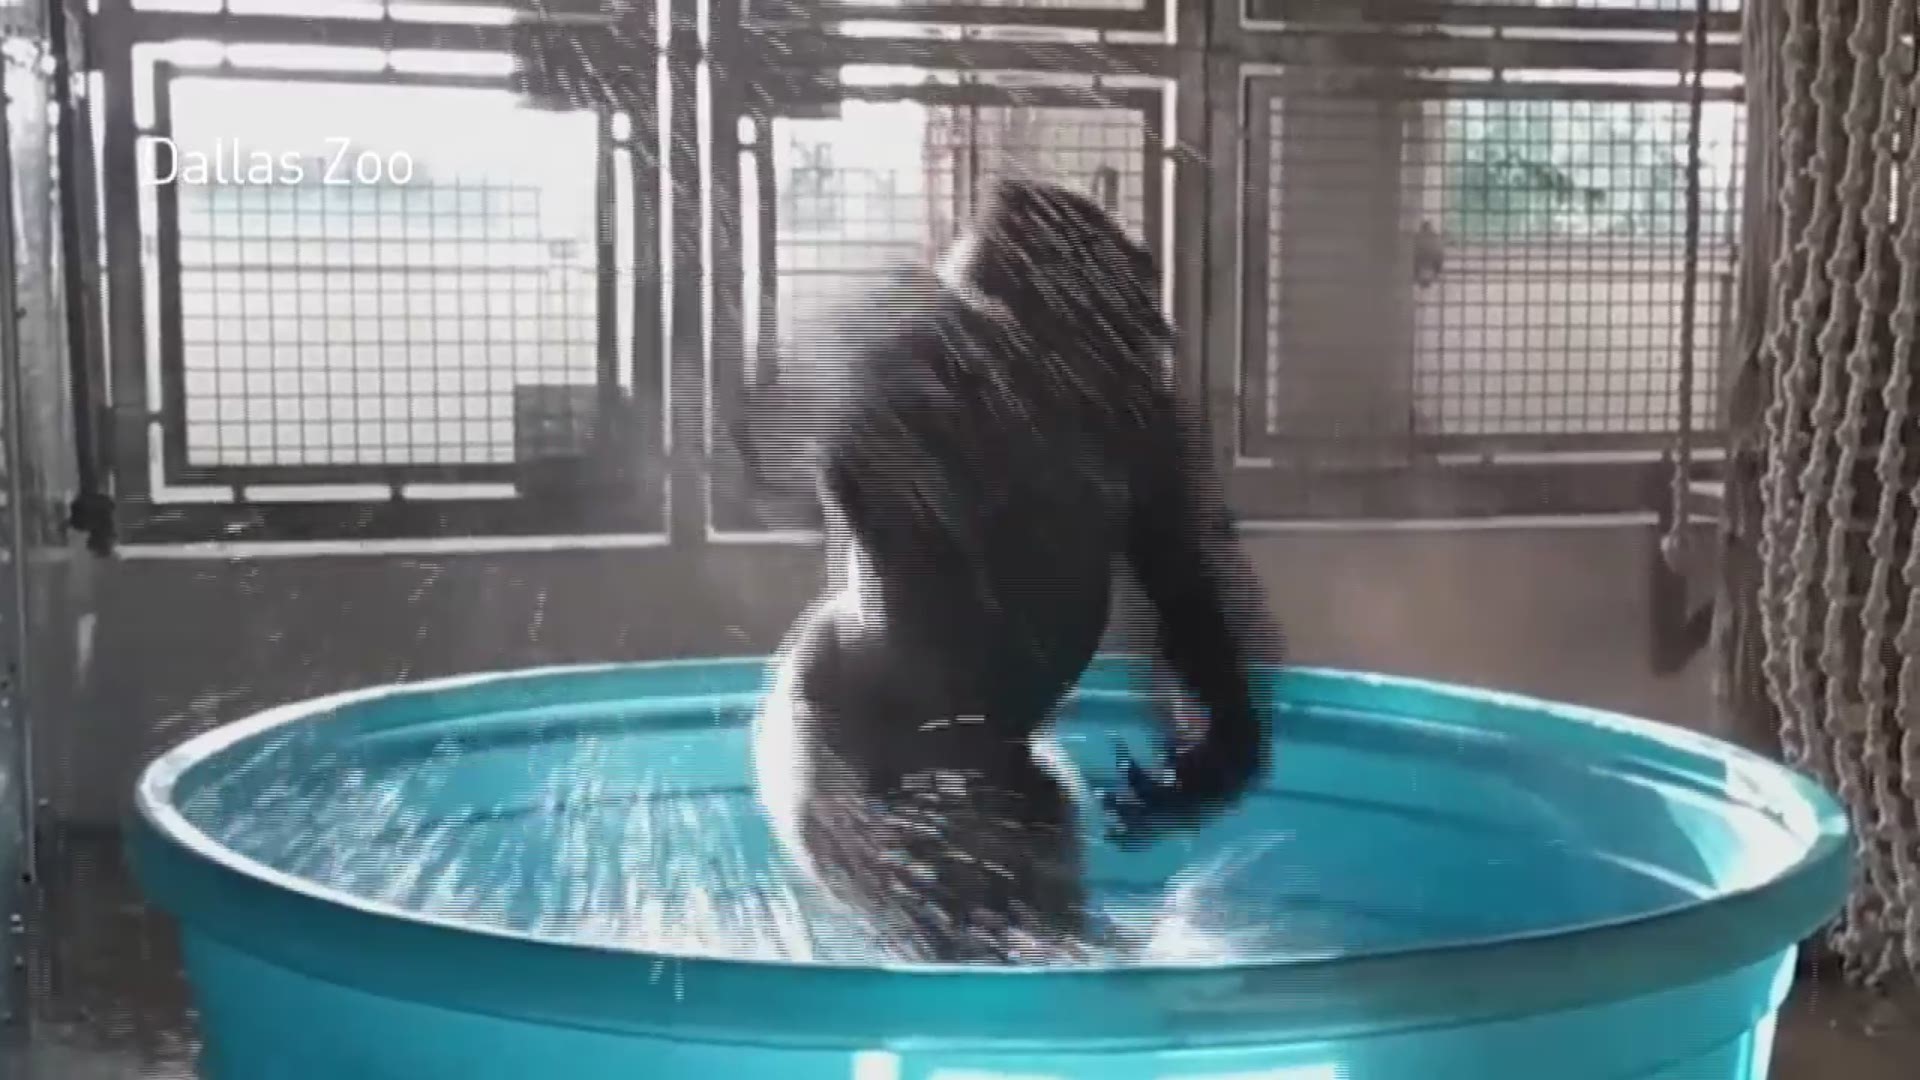 RAW: Zola the gorilla dances at Dallas Zoo